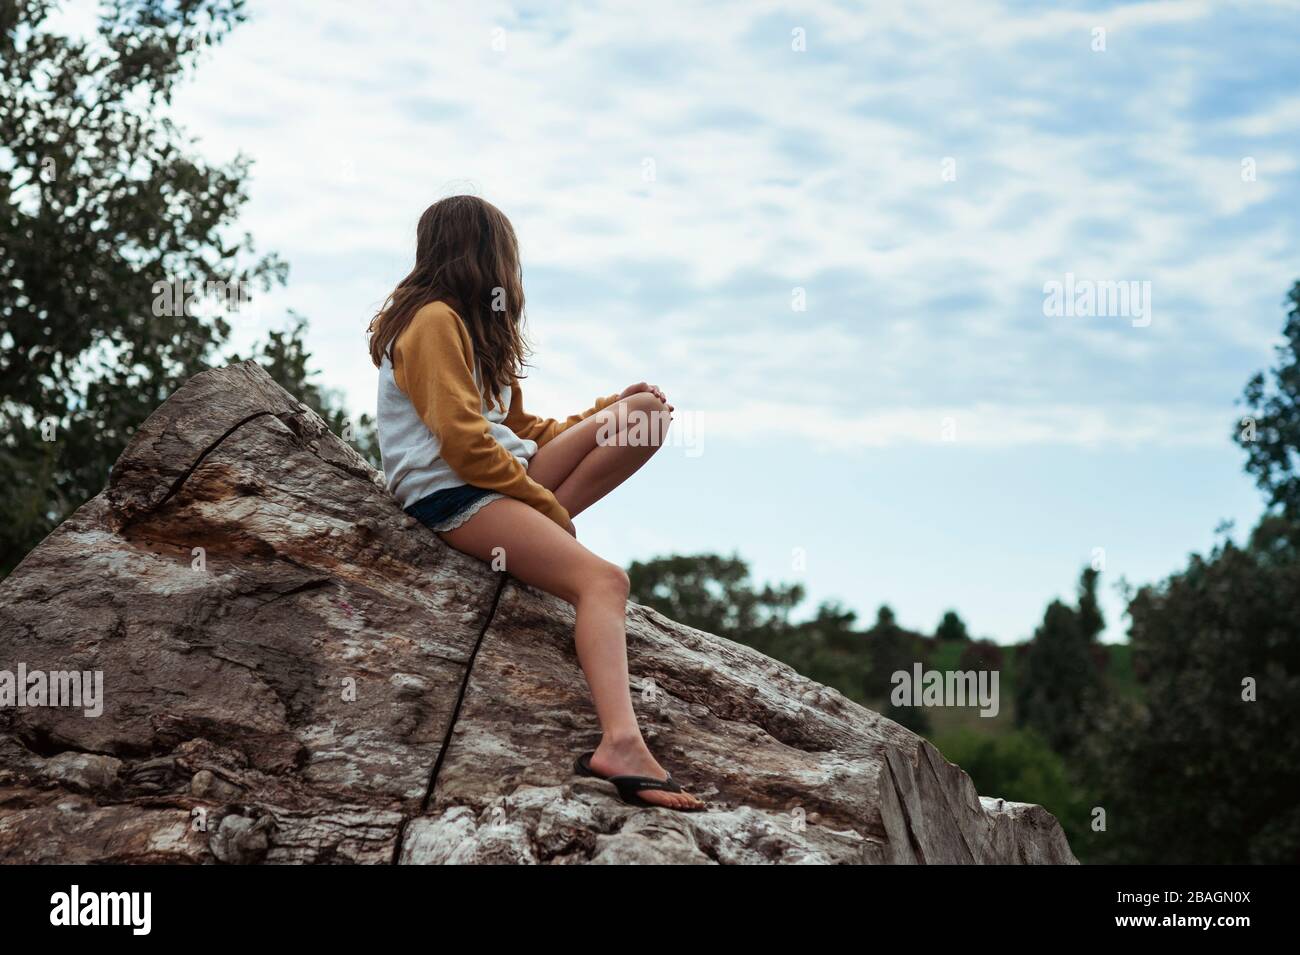 Jeune fille de 10-12 ans regardant les nuages tout en étant assise sur un rondins Banque D'Images